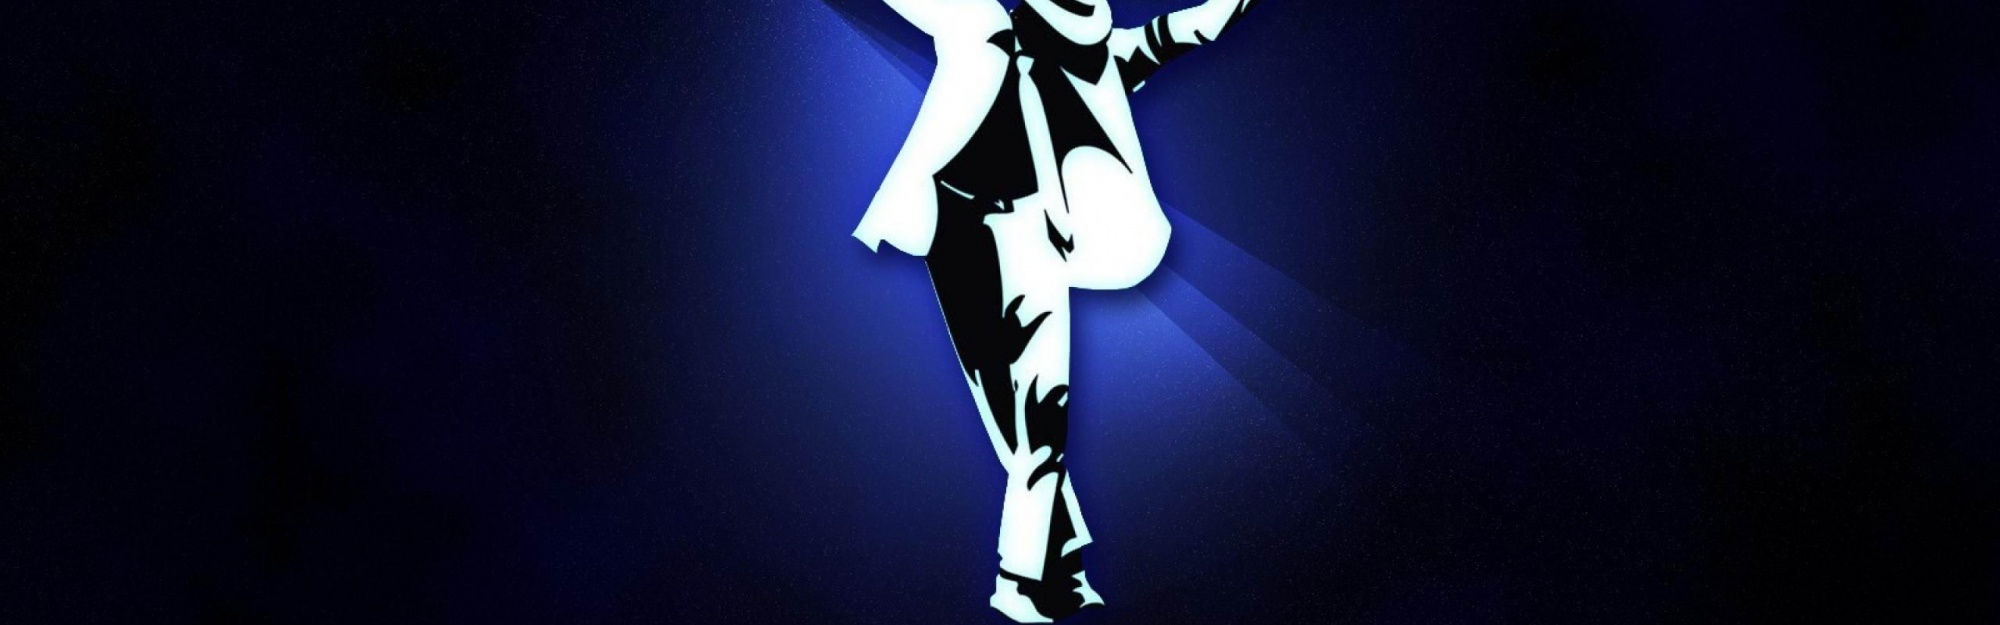 Abstract Michael Jackson